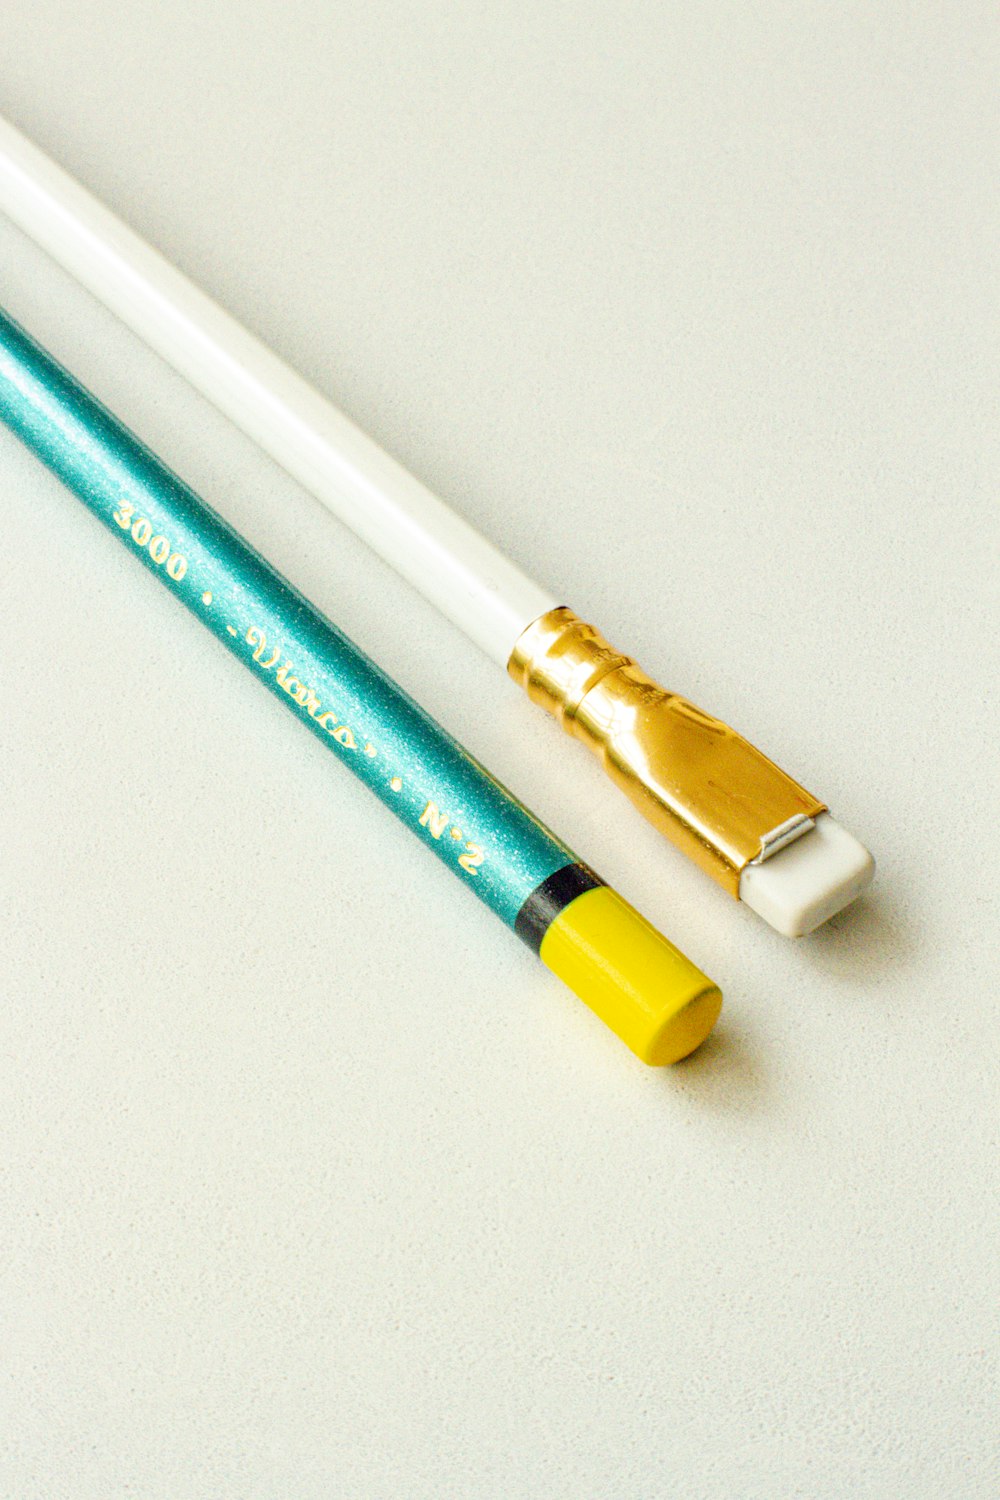 caneta azul e amarela na mesa branca